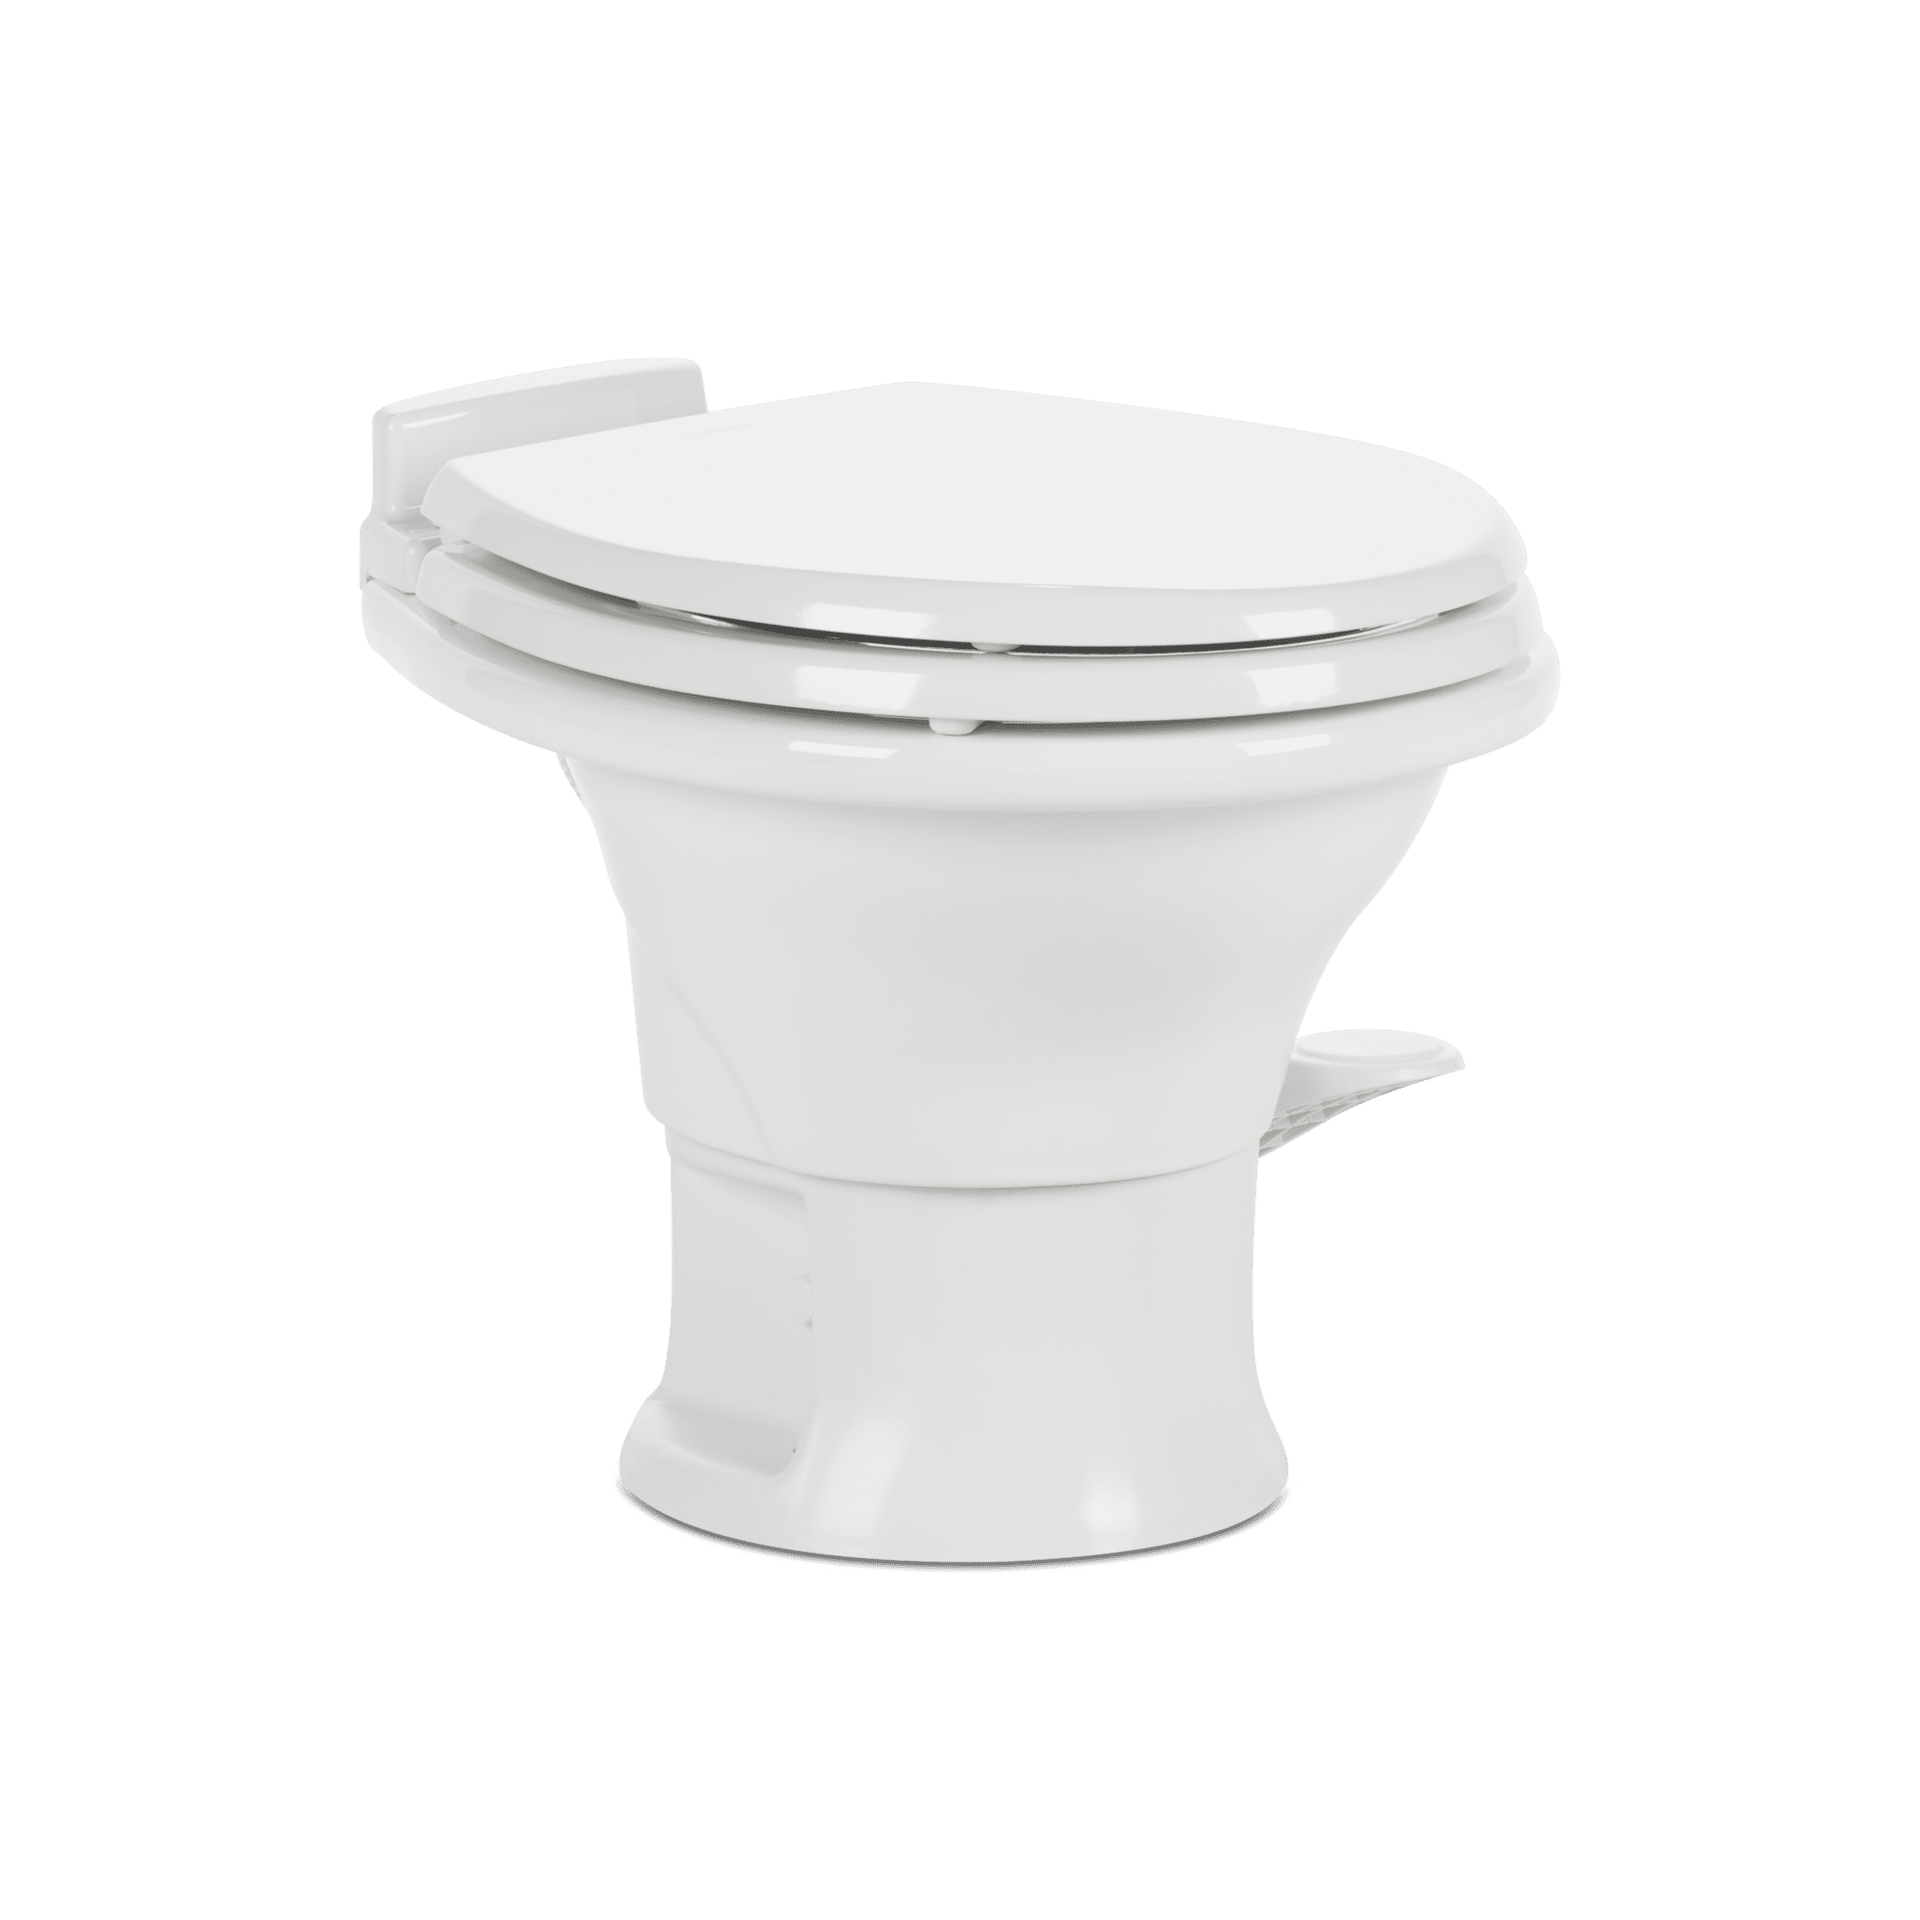 Dometic 300 toilet - Winnebago Owners Online Community